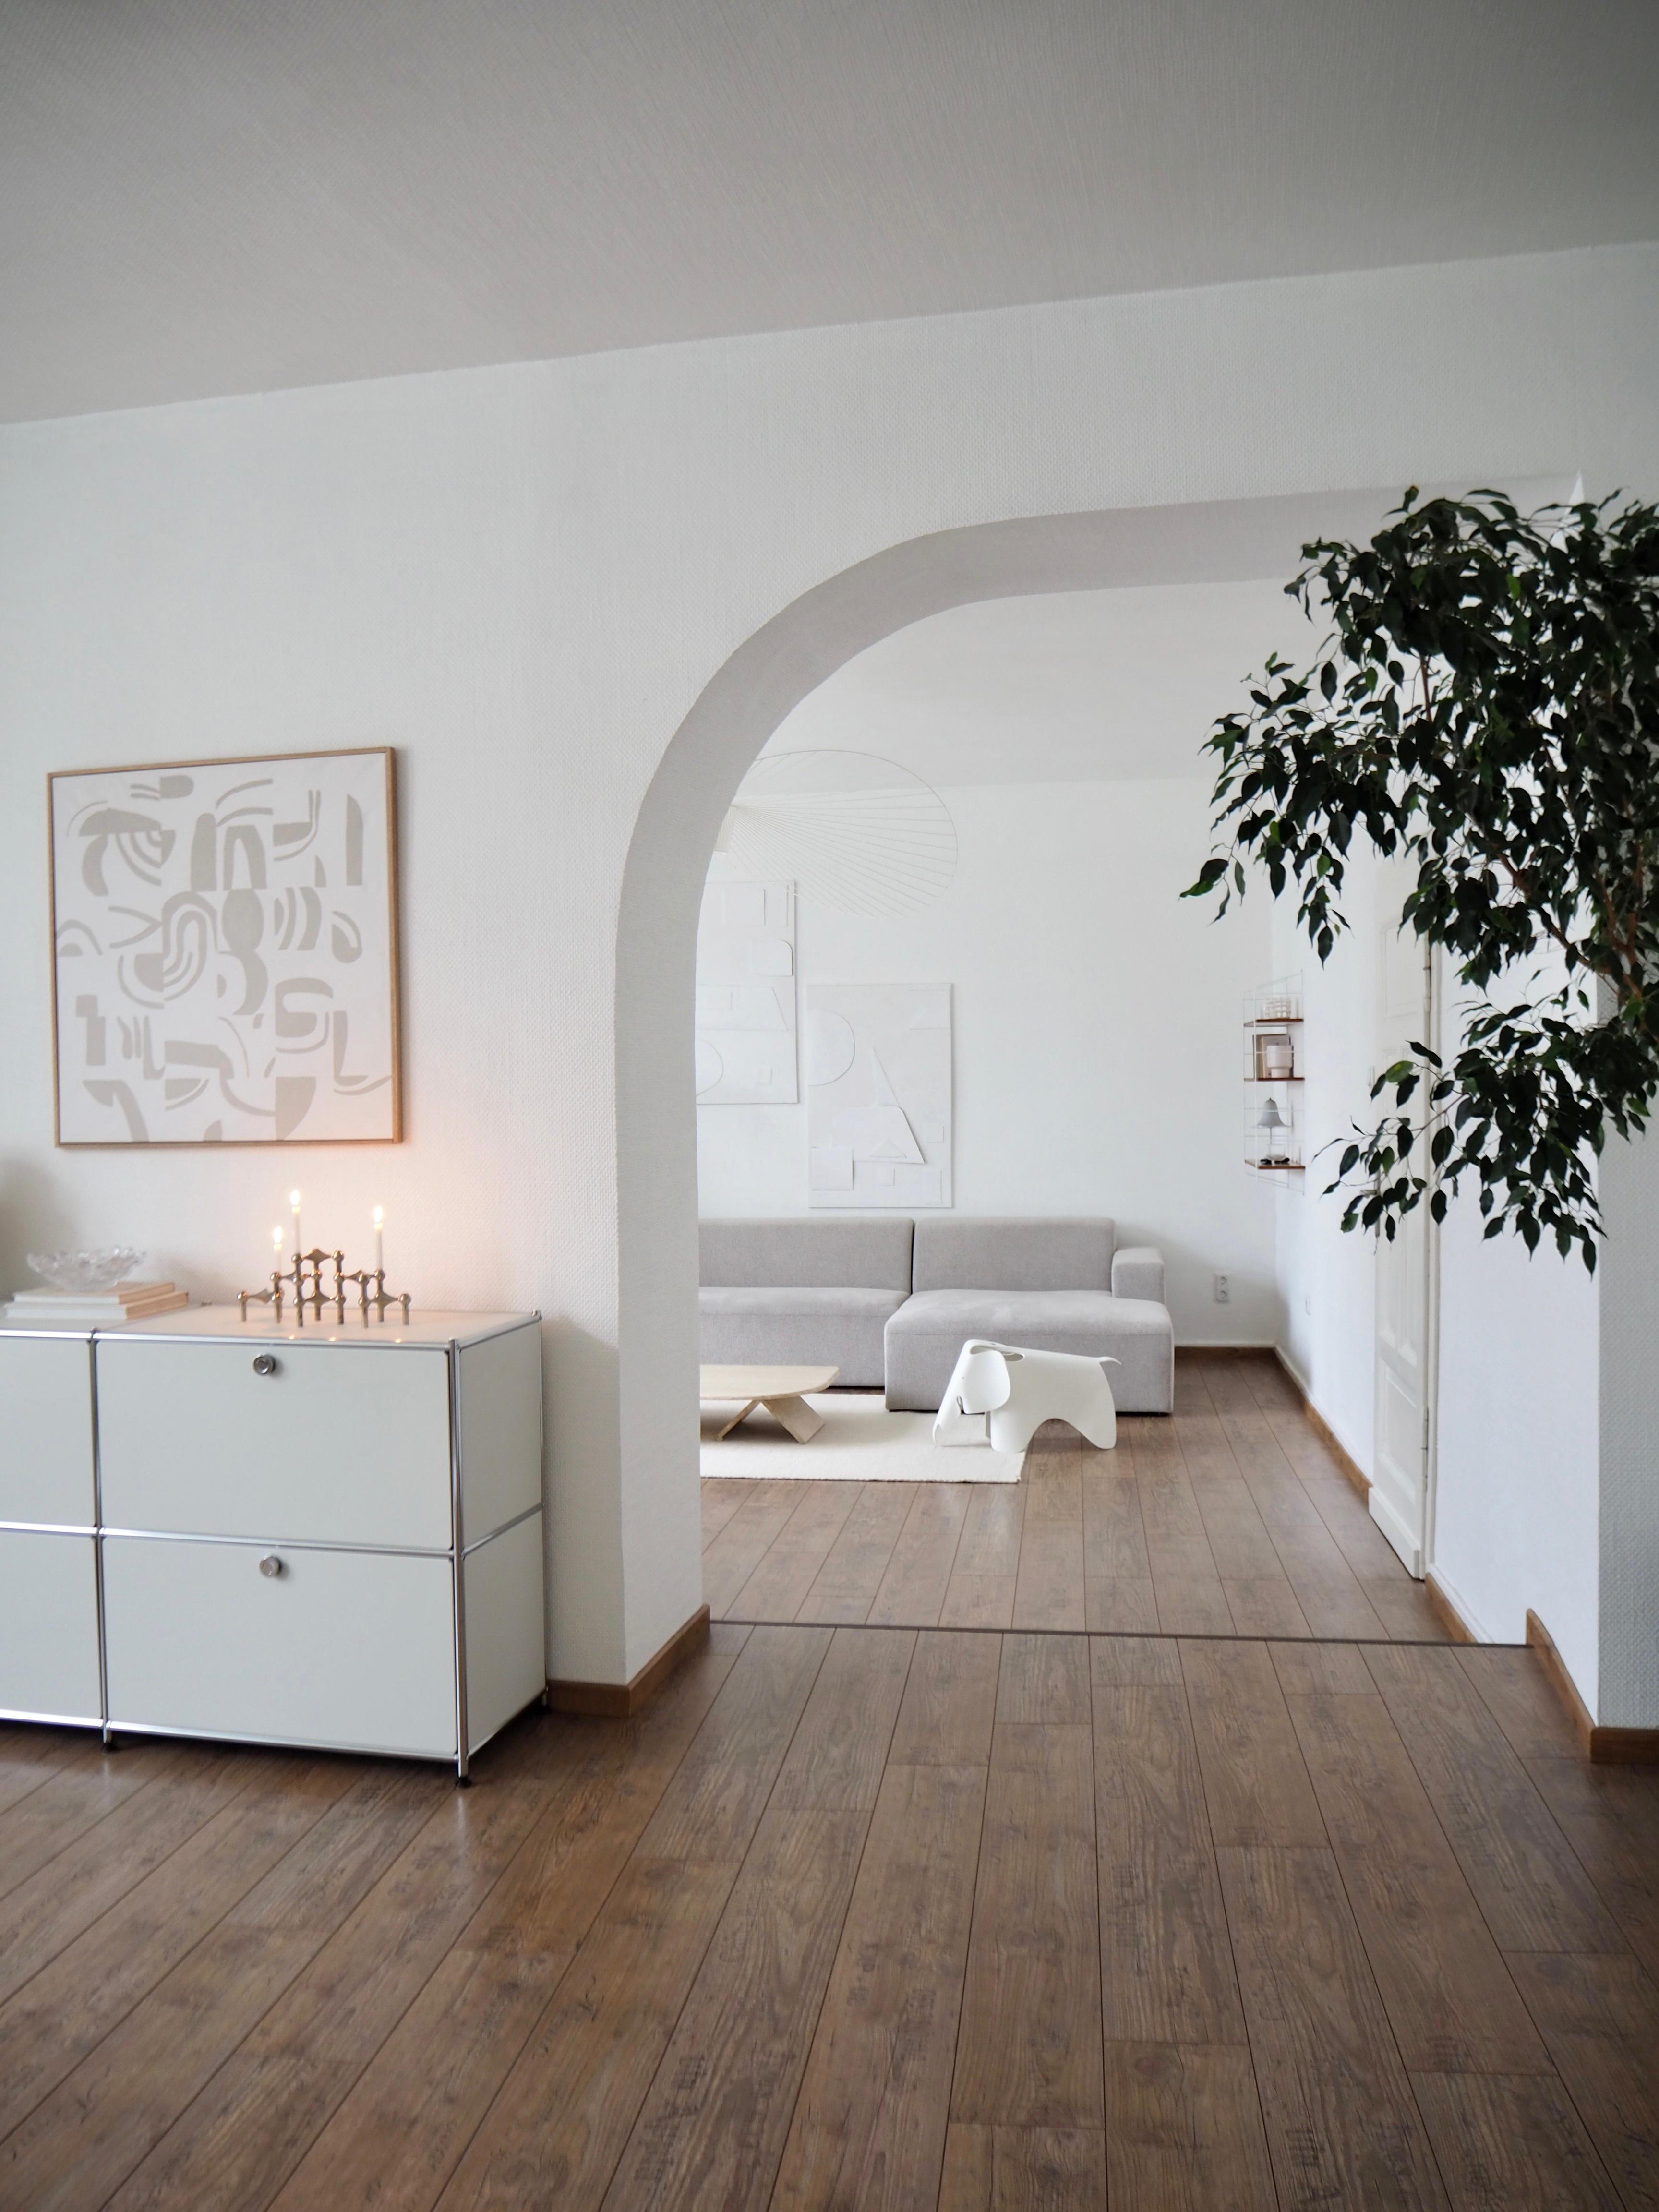 #new #diybild #aufbewahrung #wohnzimmer #ficus #couch #travertin #coffeetable #altbau #whiteliving